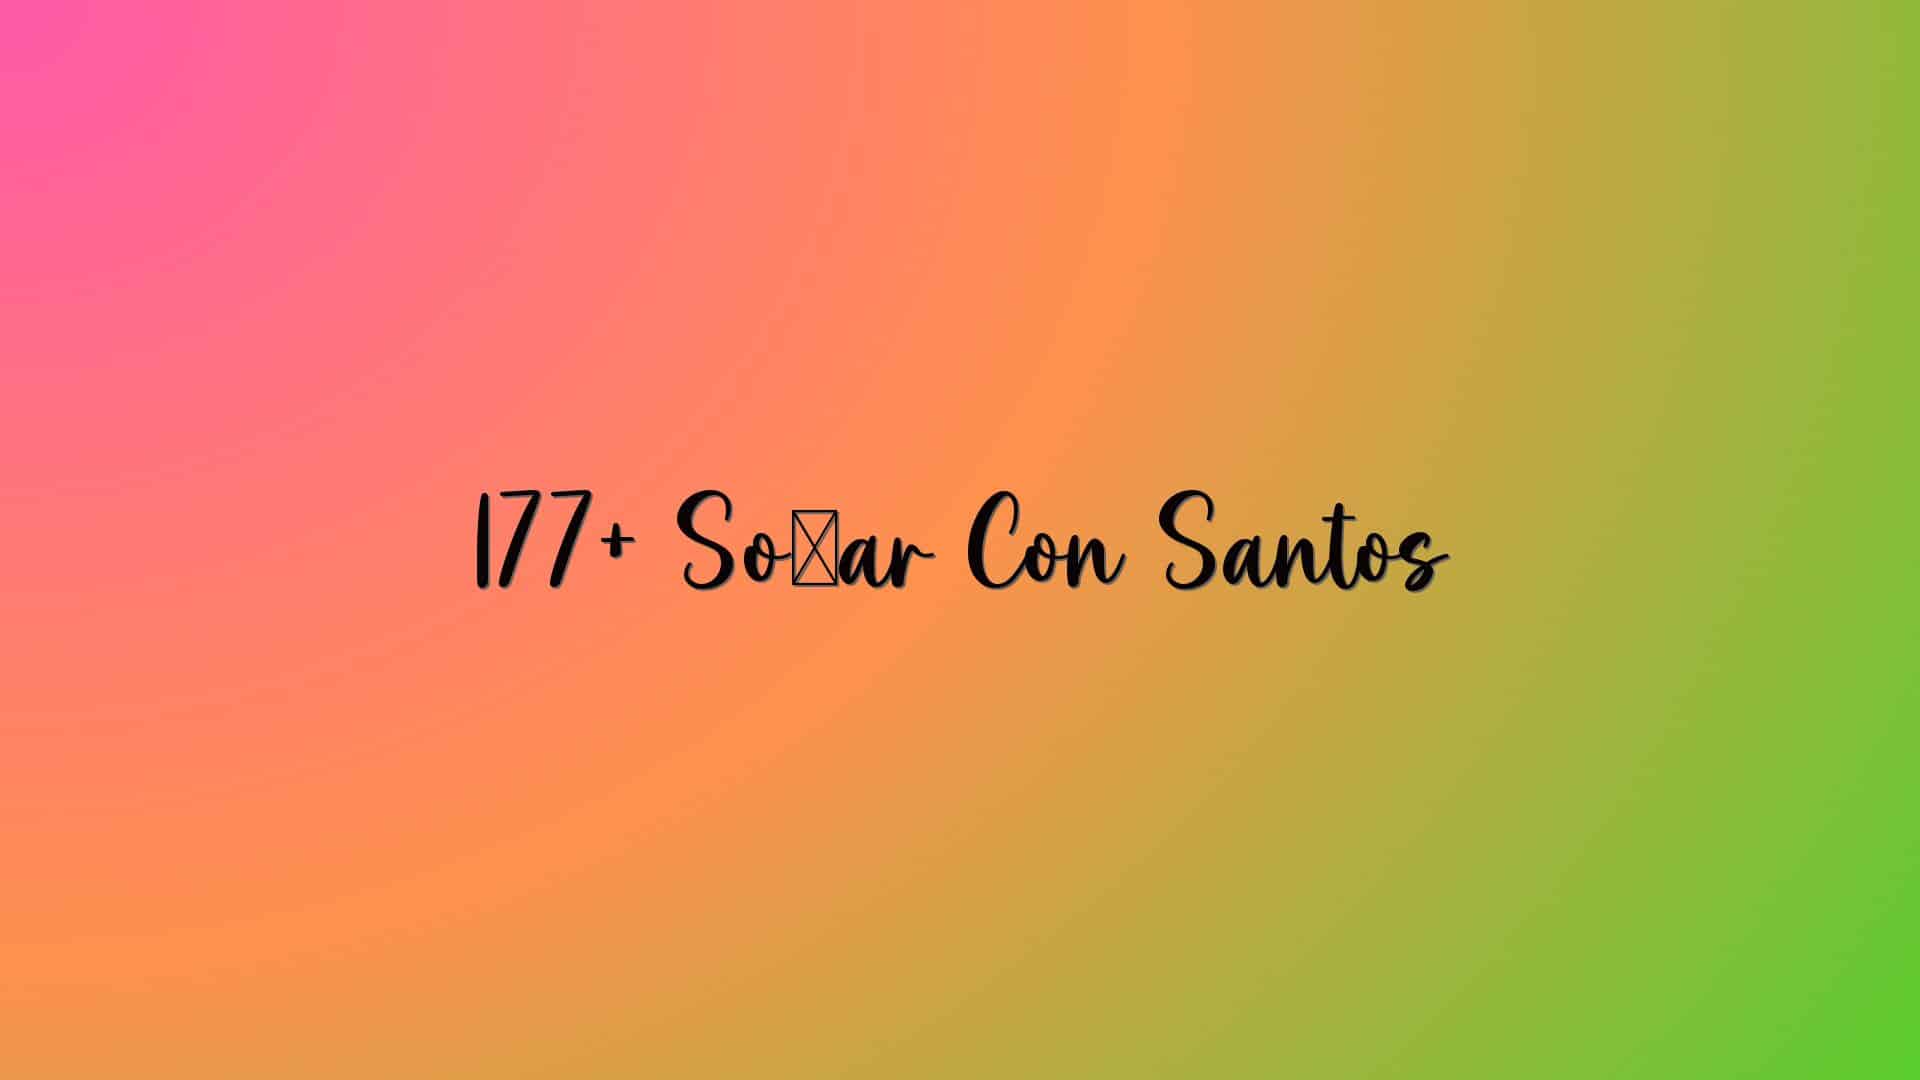 177+ Soñar Con Santos